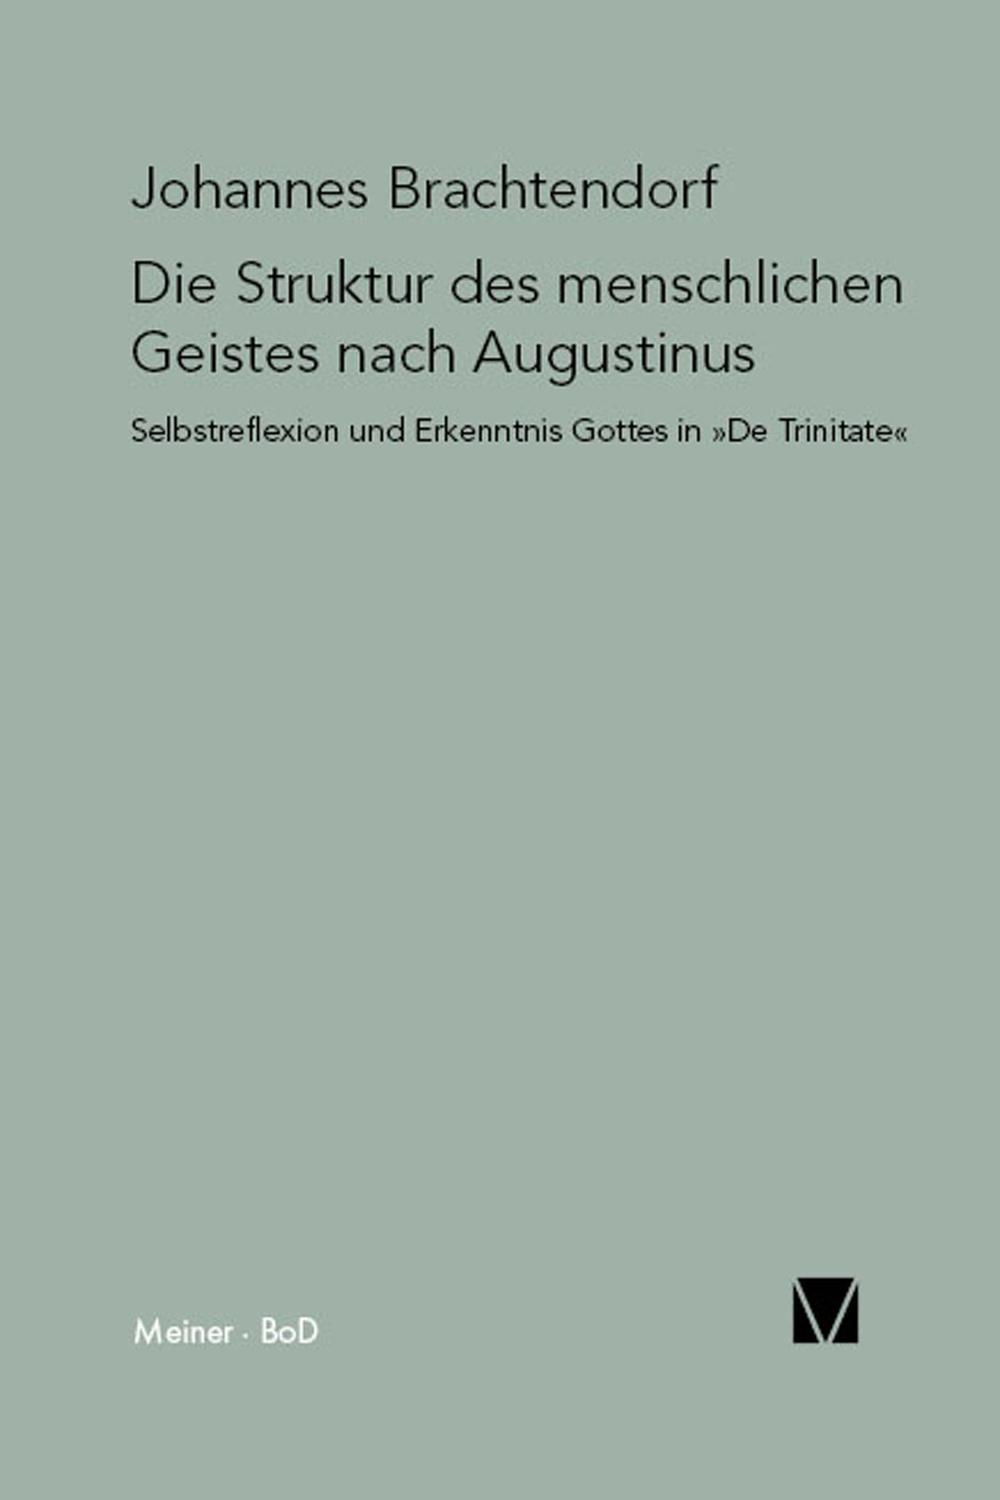 Die Struktur des menschlichen Geistes nach Augustinus - Johannes Brachtendorf